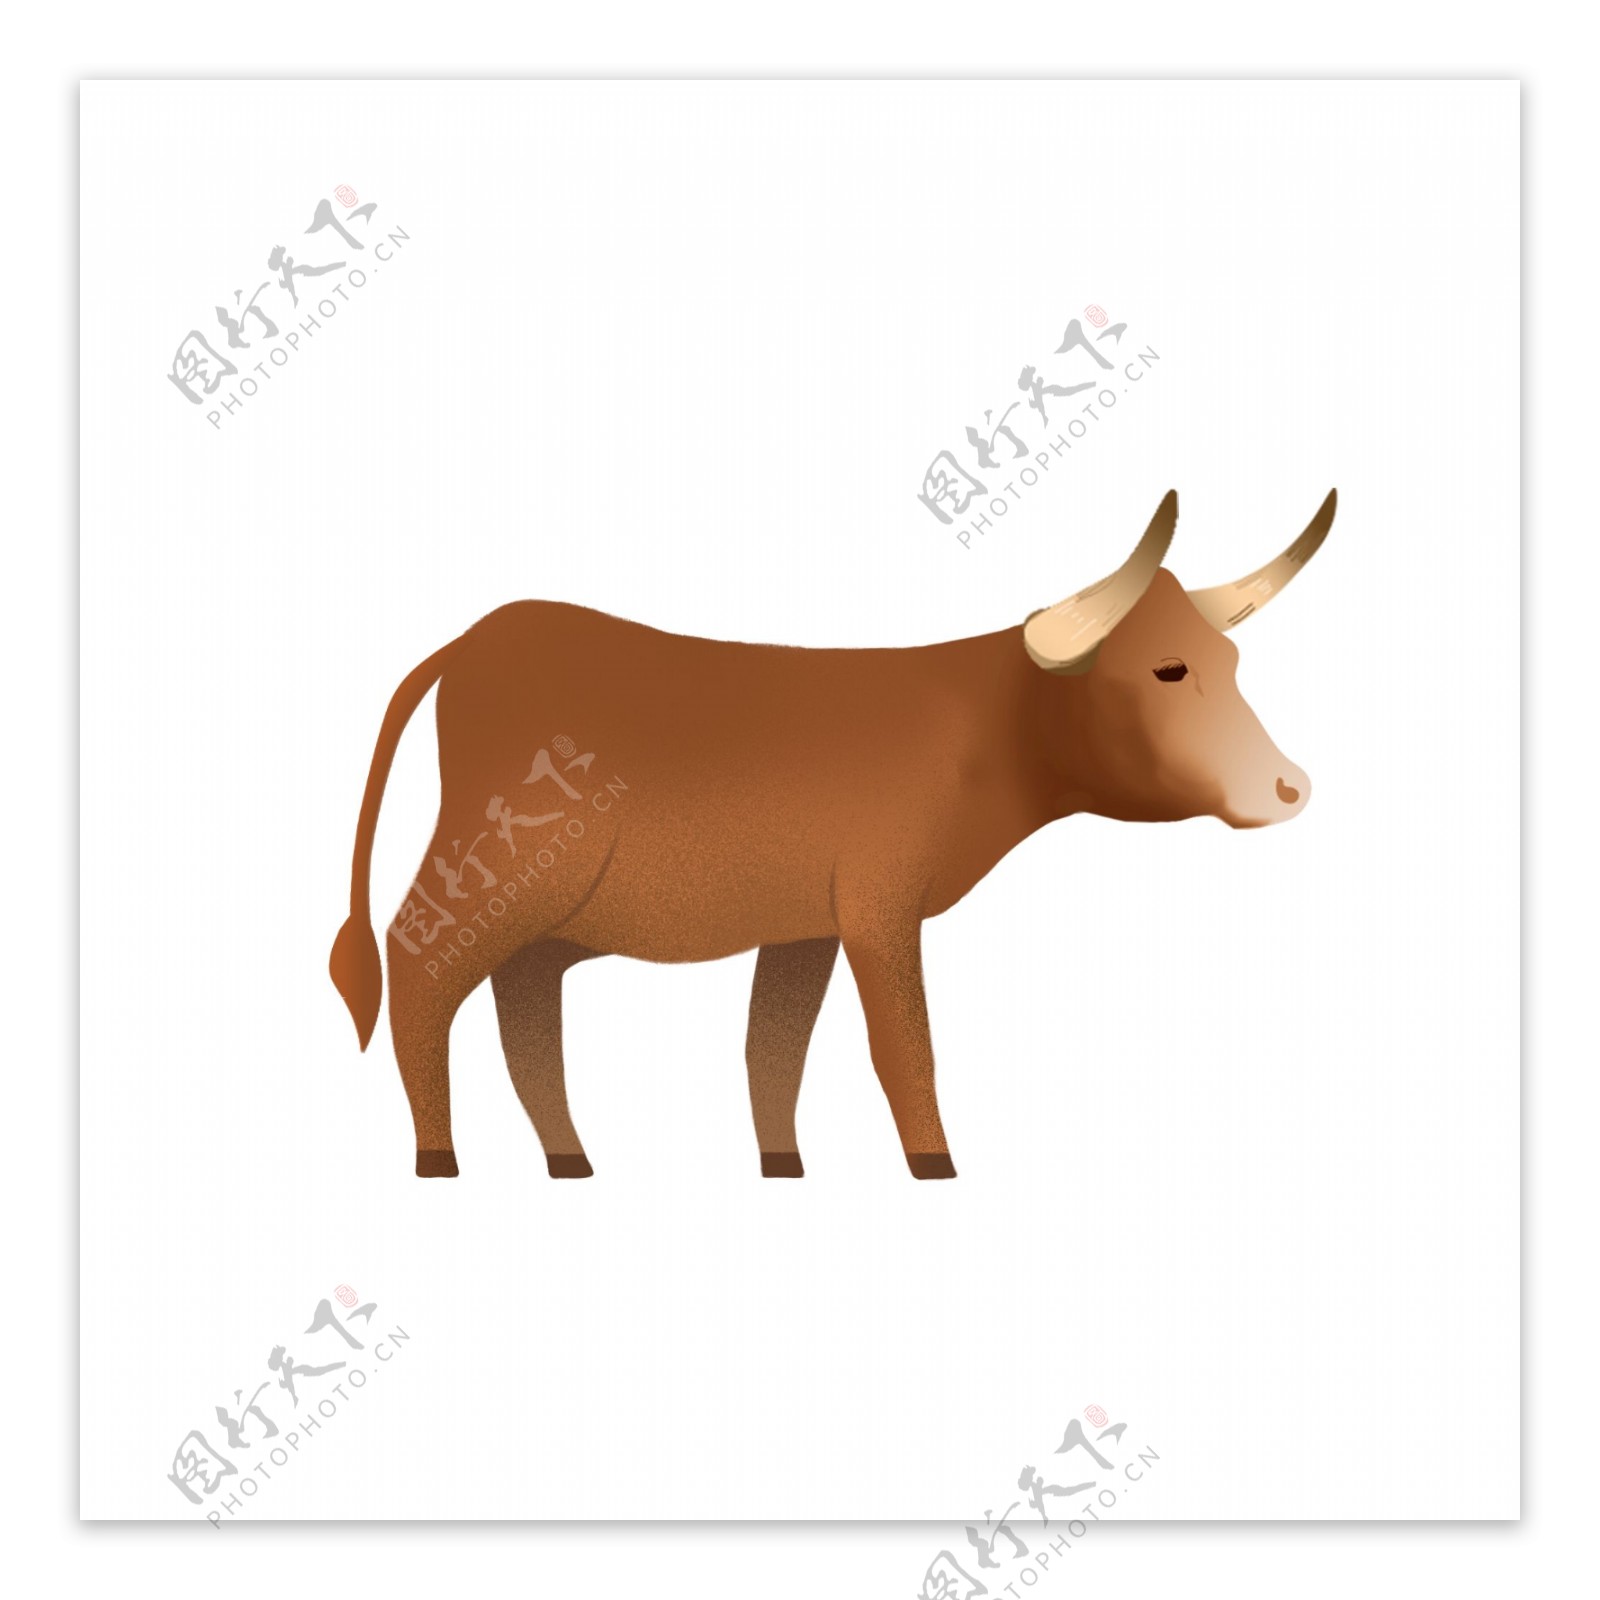 手绘一头牛插画动物设计